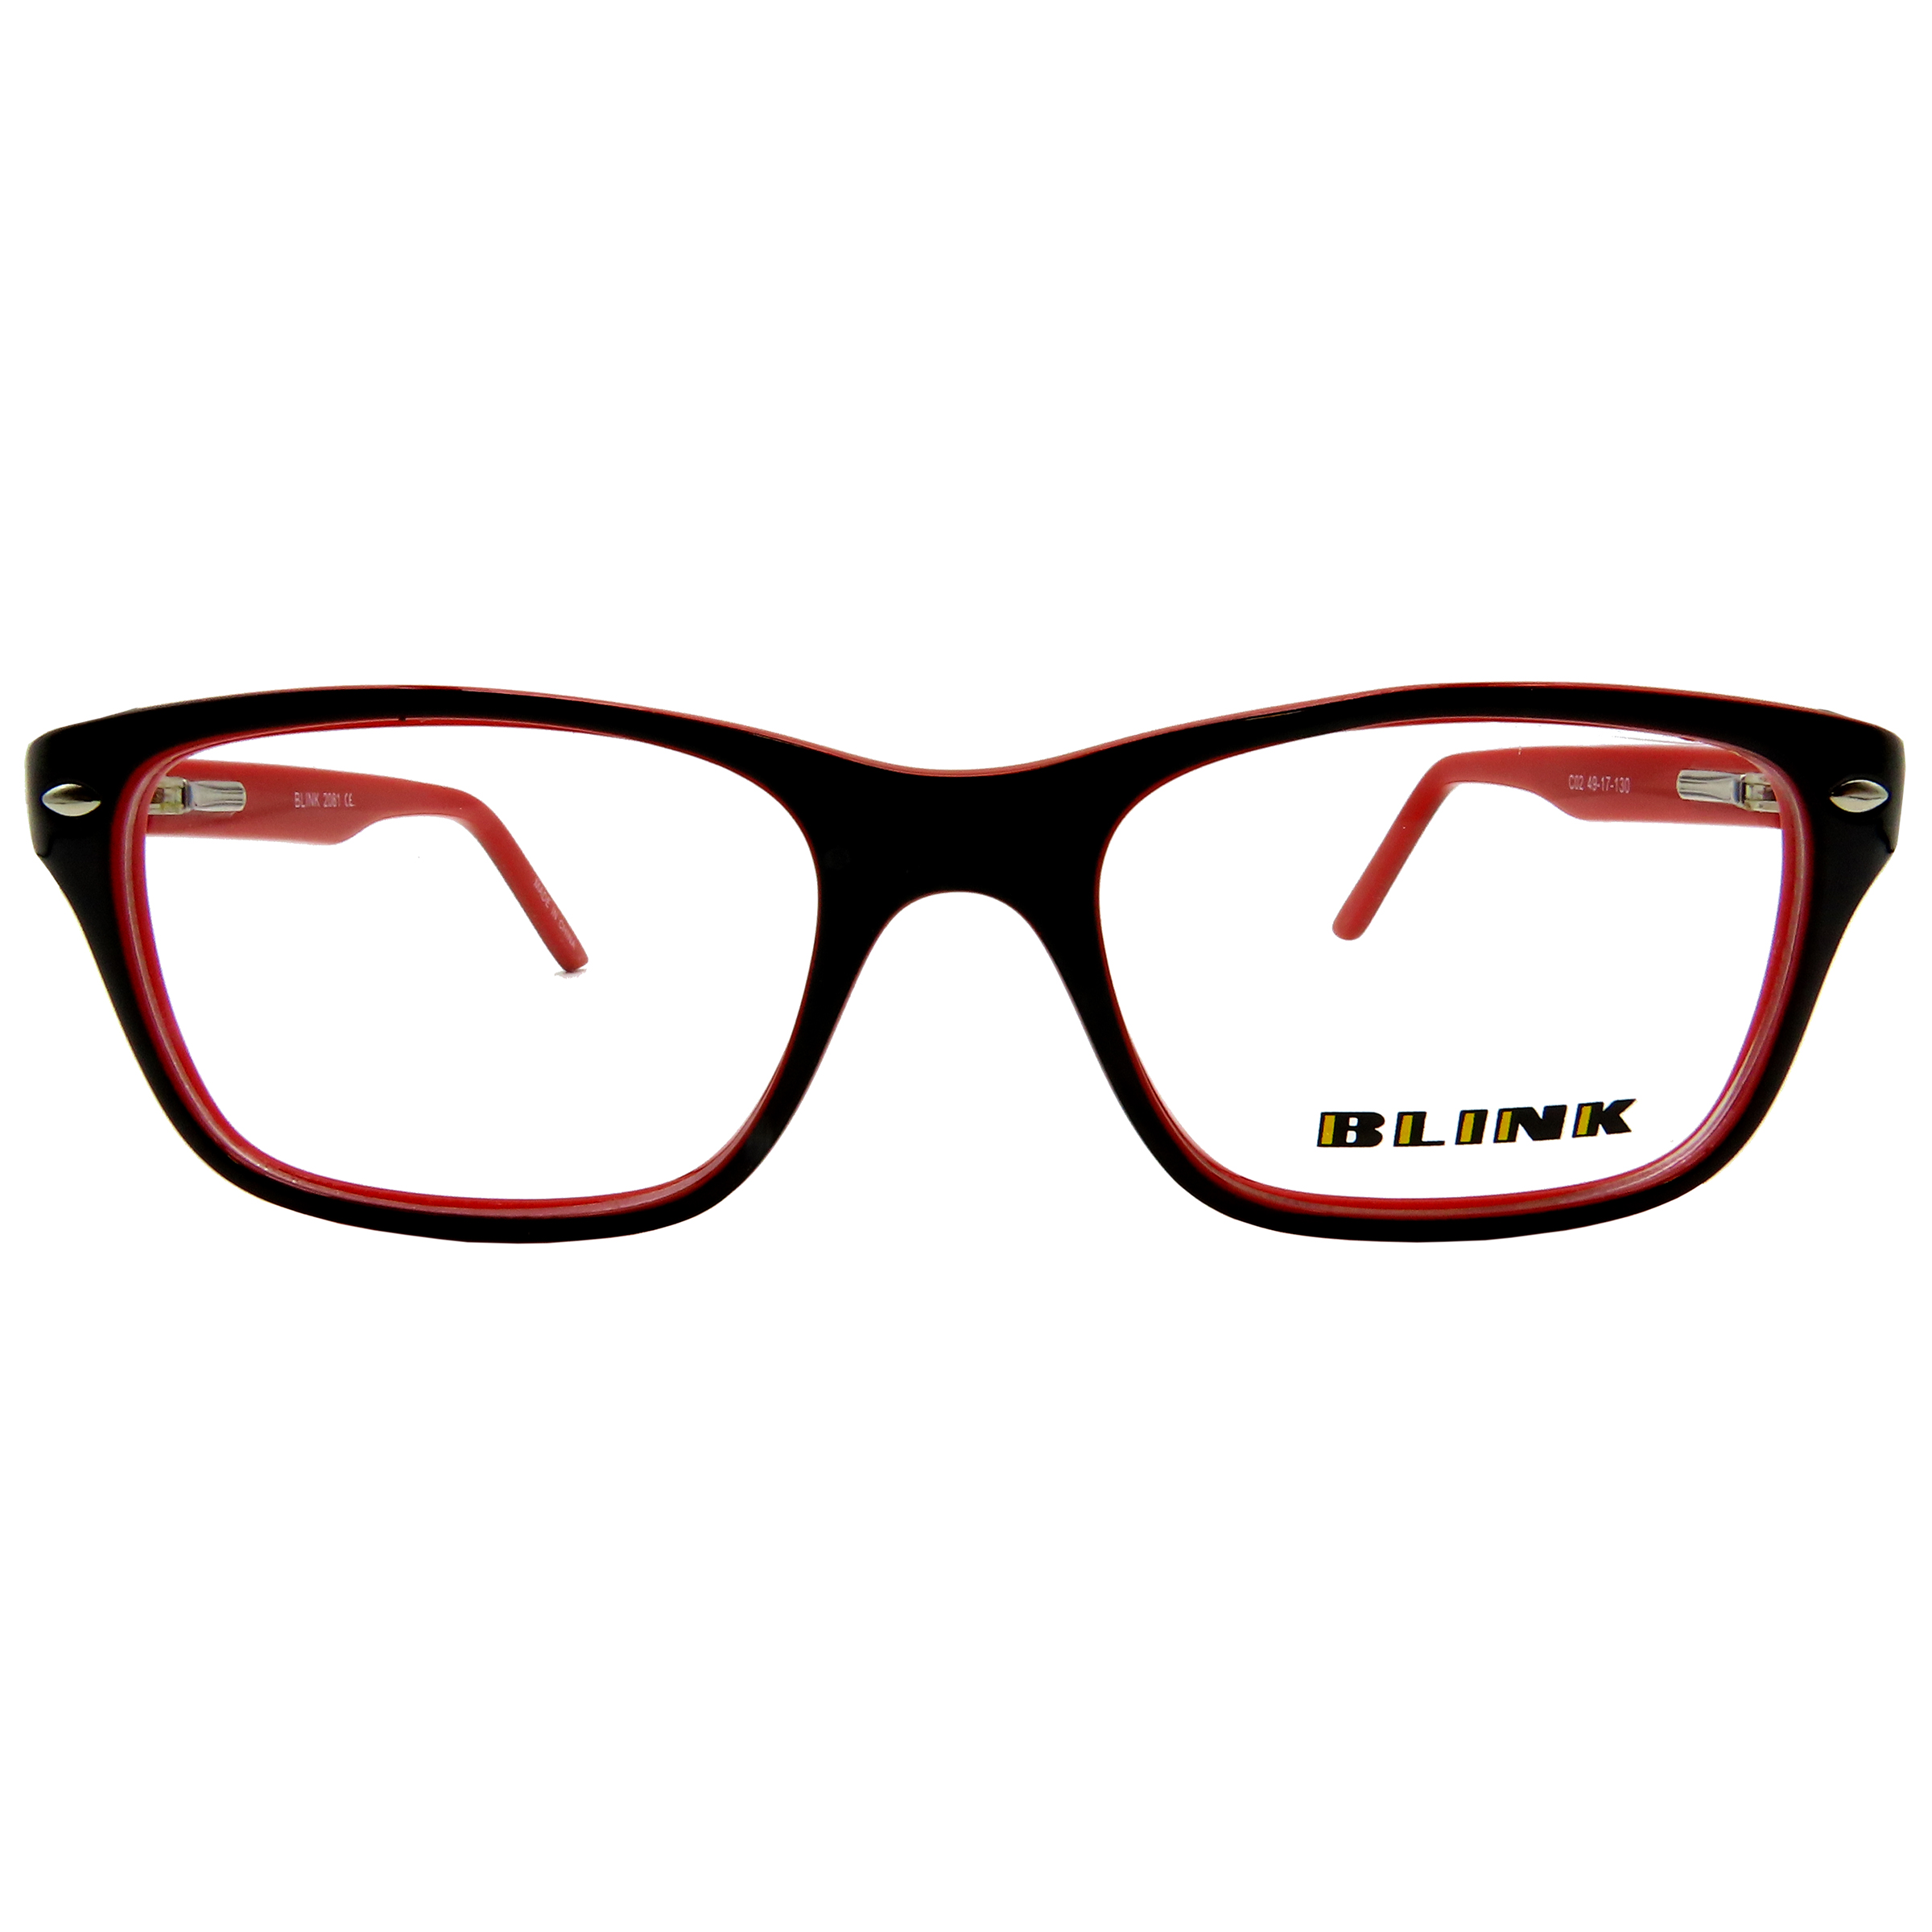 فریم عینک طبی دخترانه بلینک مدل 2081-C2